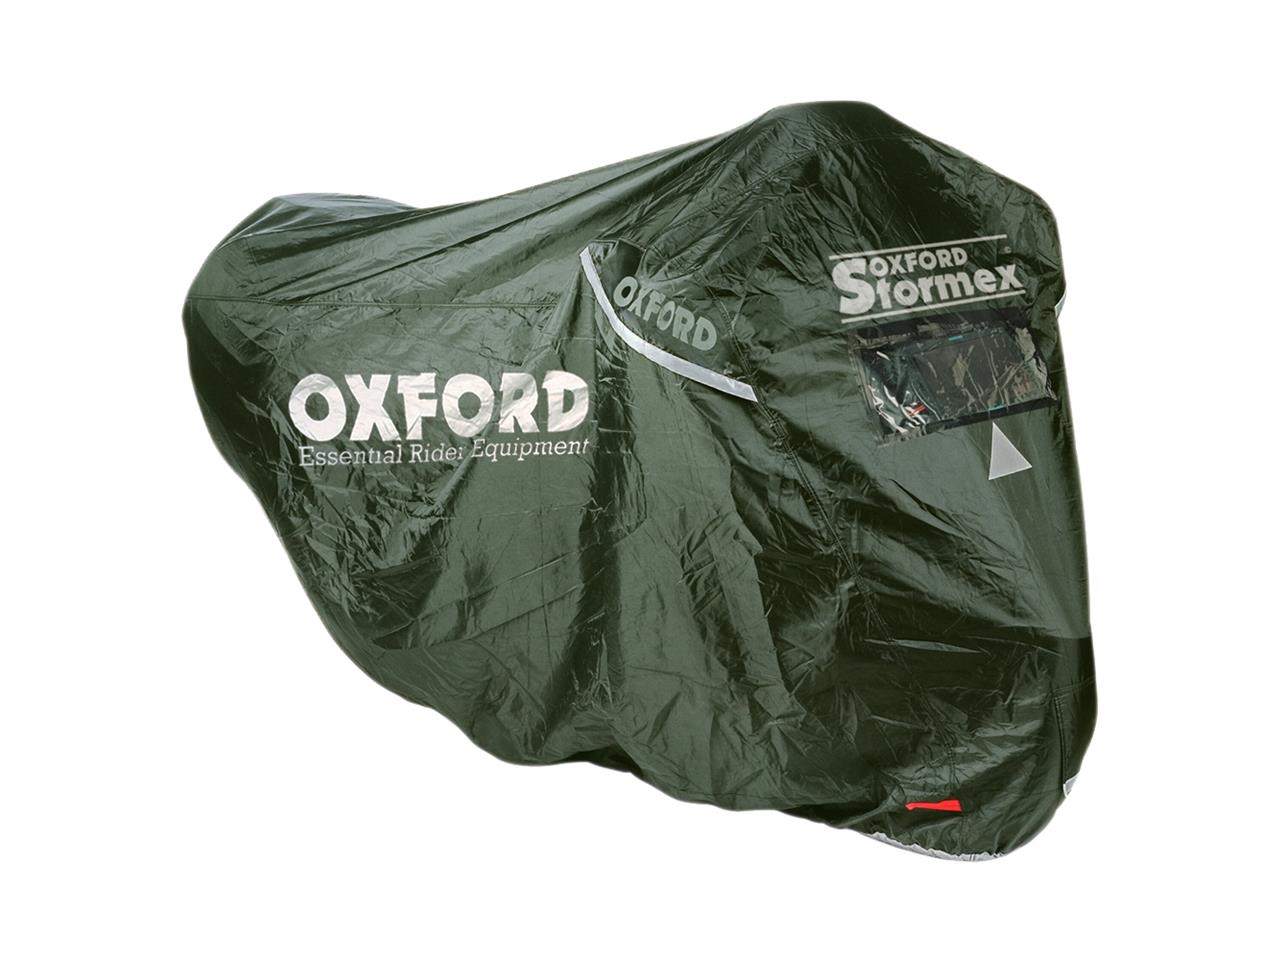 Housse de protection marque Oxford Stormex L